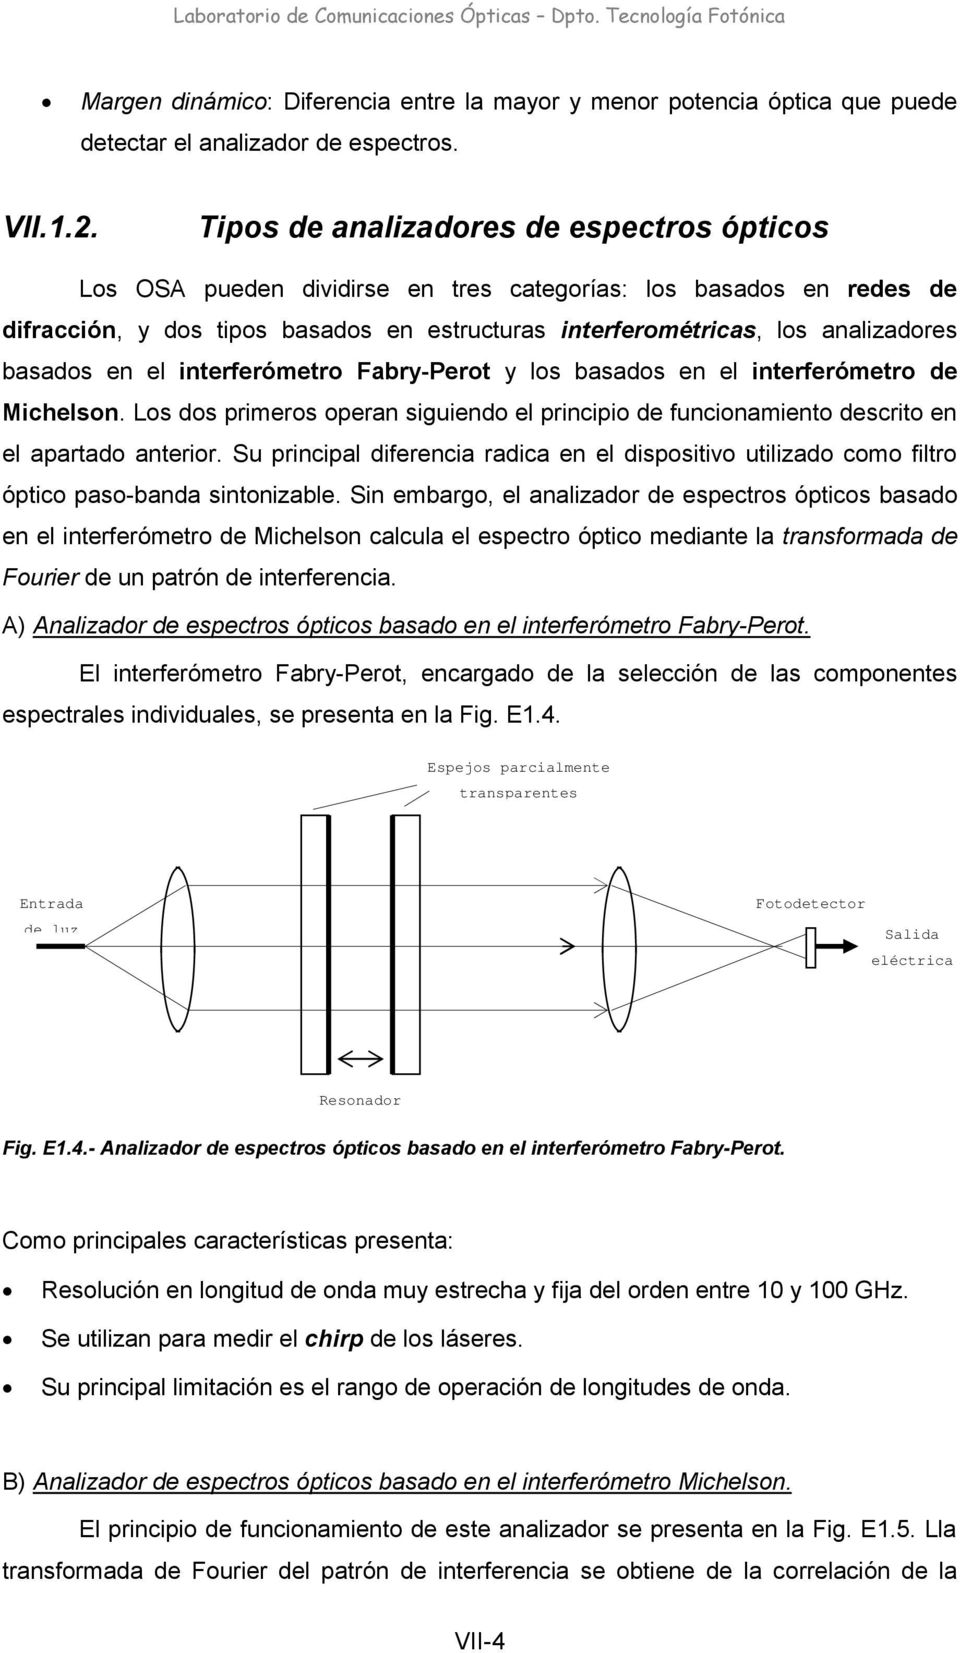 basados en el interferómetro Fabry-Perot y los basados en el interferómetro de Michelson. Los dos primeros operan siguiendo el principio de funcionamiento descrito en el apartado anterior.